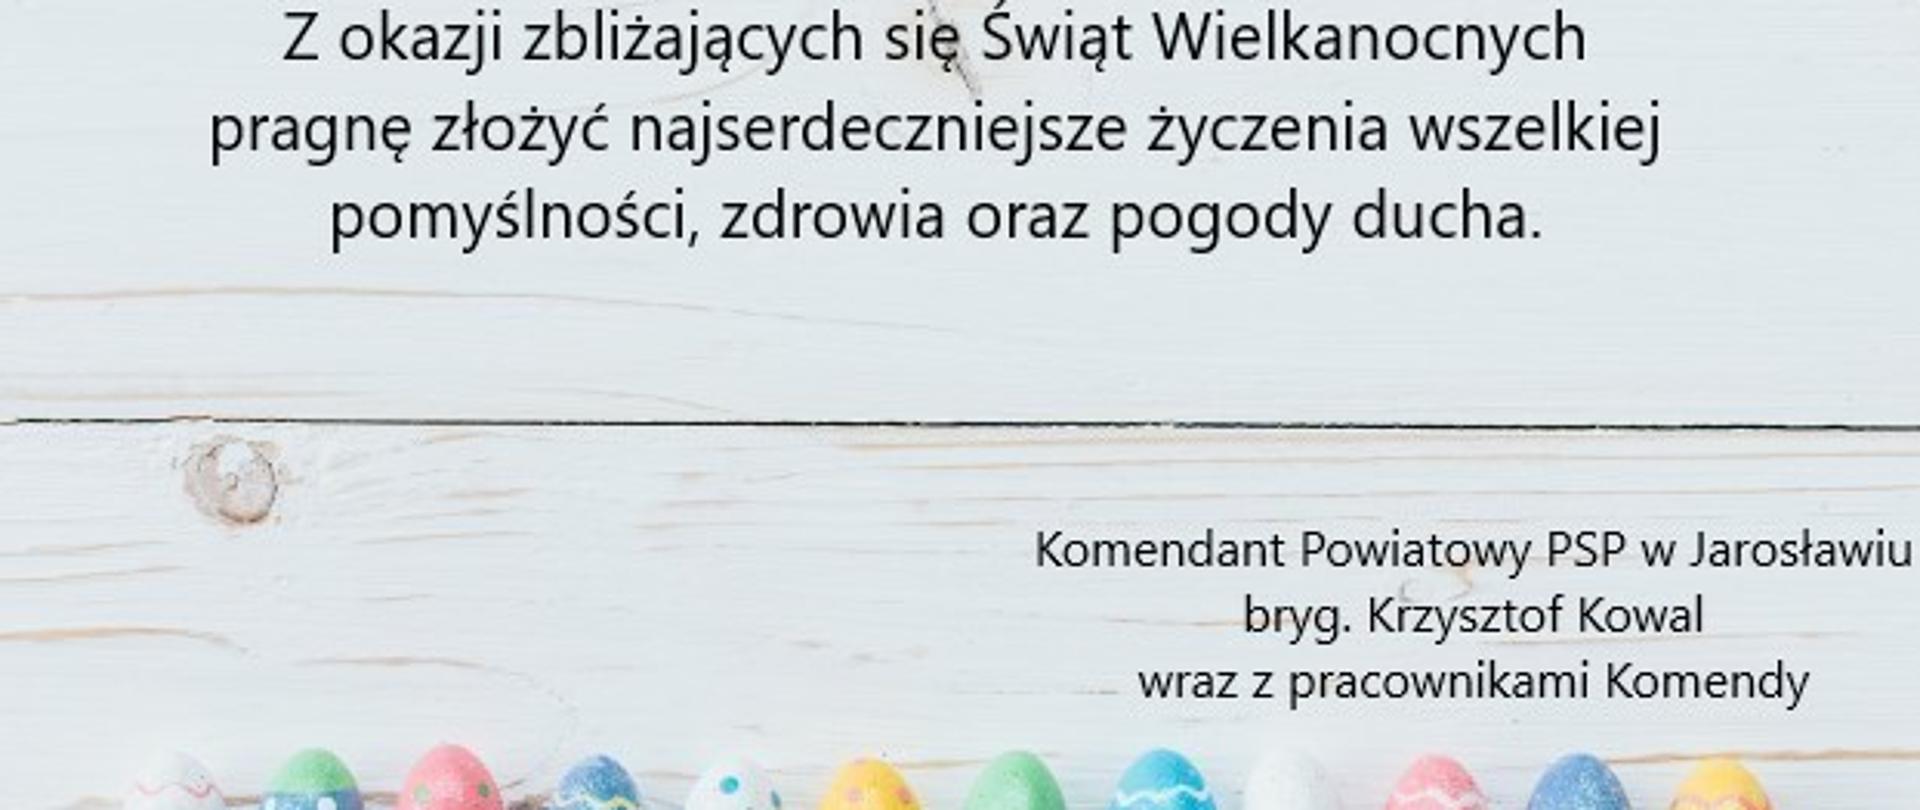 Na zdjęciu widać życzenia o treści "Z okazji zbliżających się Świąt Wielkanocnych pragnę złożyć najserdeczniejsze życzenia wszelkiej pomyślności, zdrowia oraz pogody ducha.", a także podpis "Komendant Powiatowy PSP w Jarosławiu bryg. Krzysztof Kowal wraz z pracownikami Komendy. Na dole kartki widać kilkanaście kolorowych jajek. 